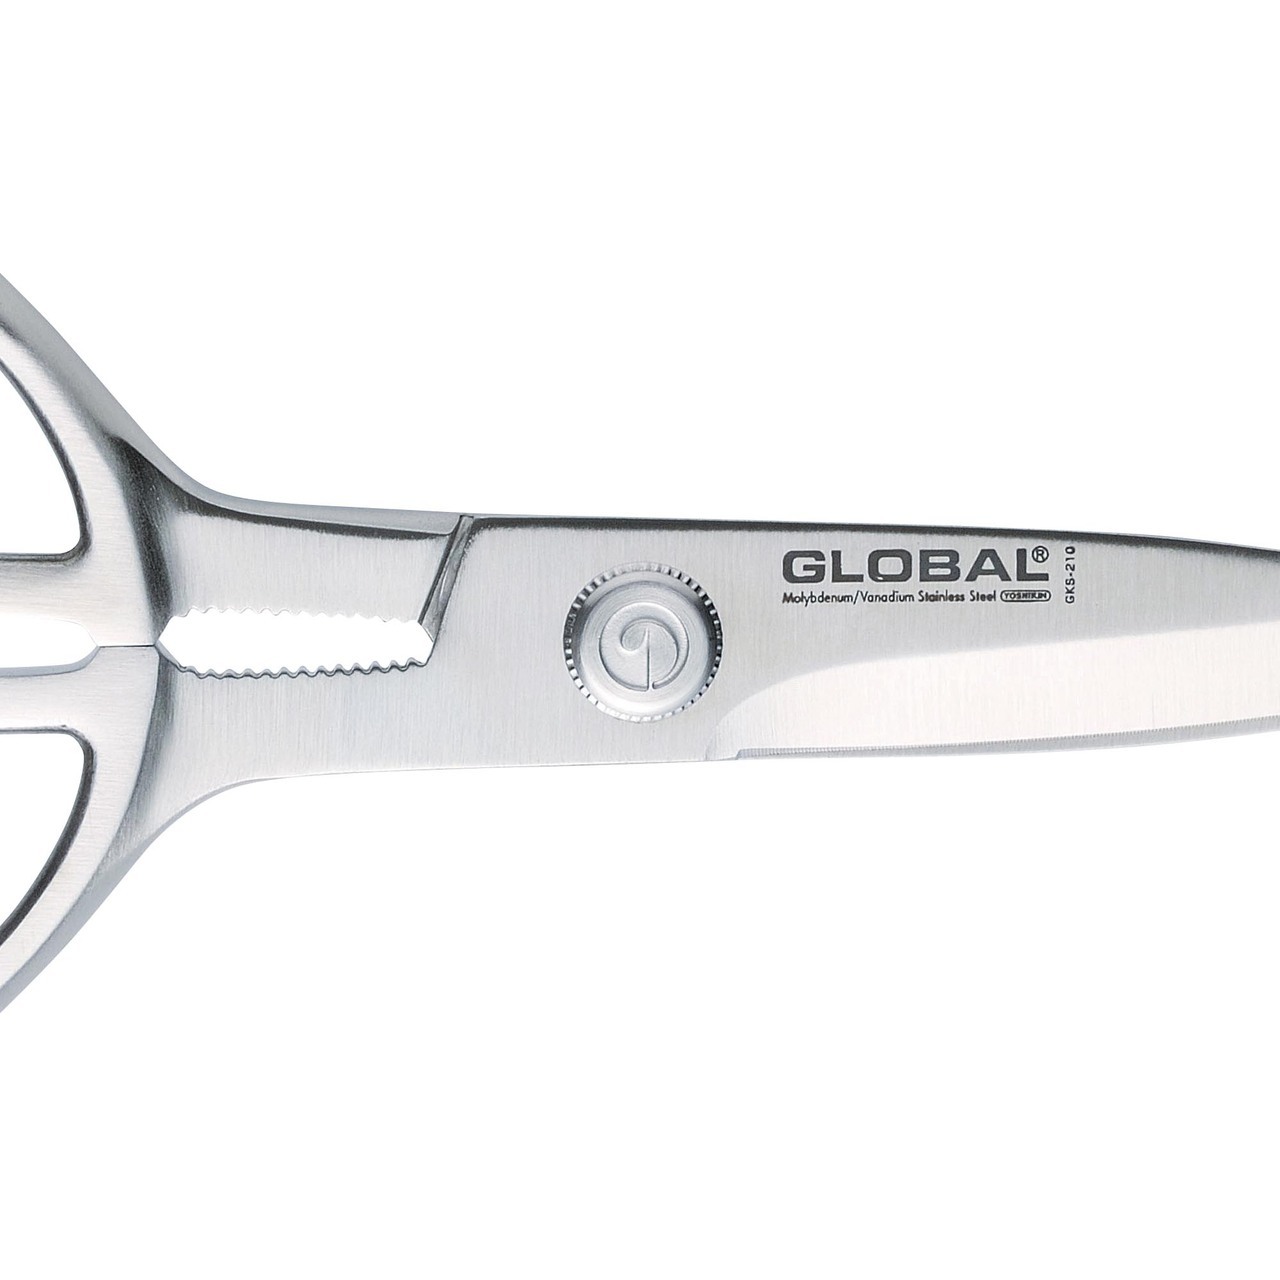 Global Knives GKS-210 Kitchen Shears Scissors 21cm Stainless Steel